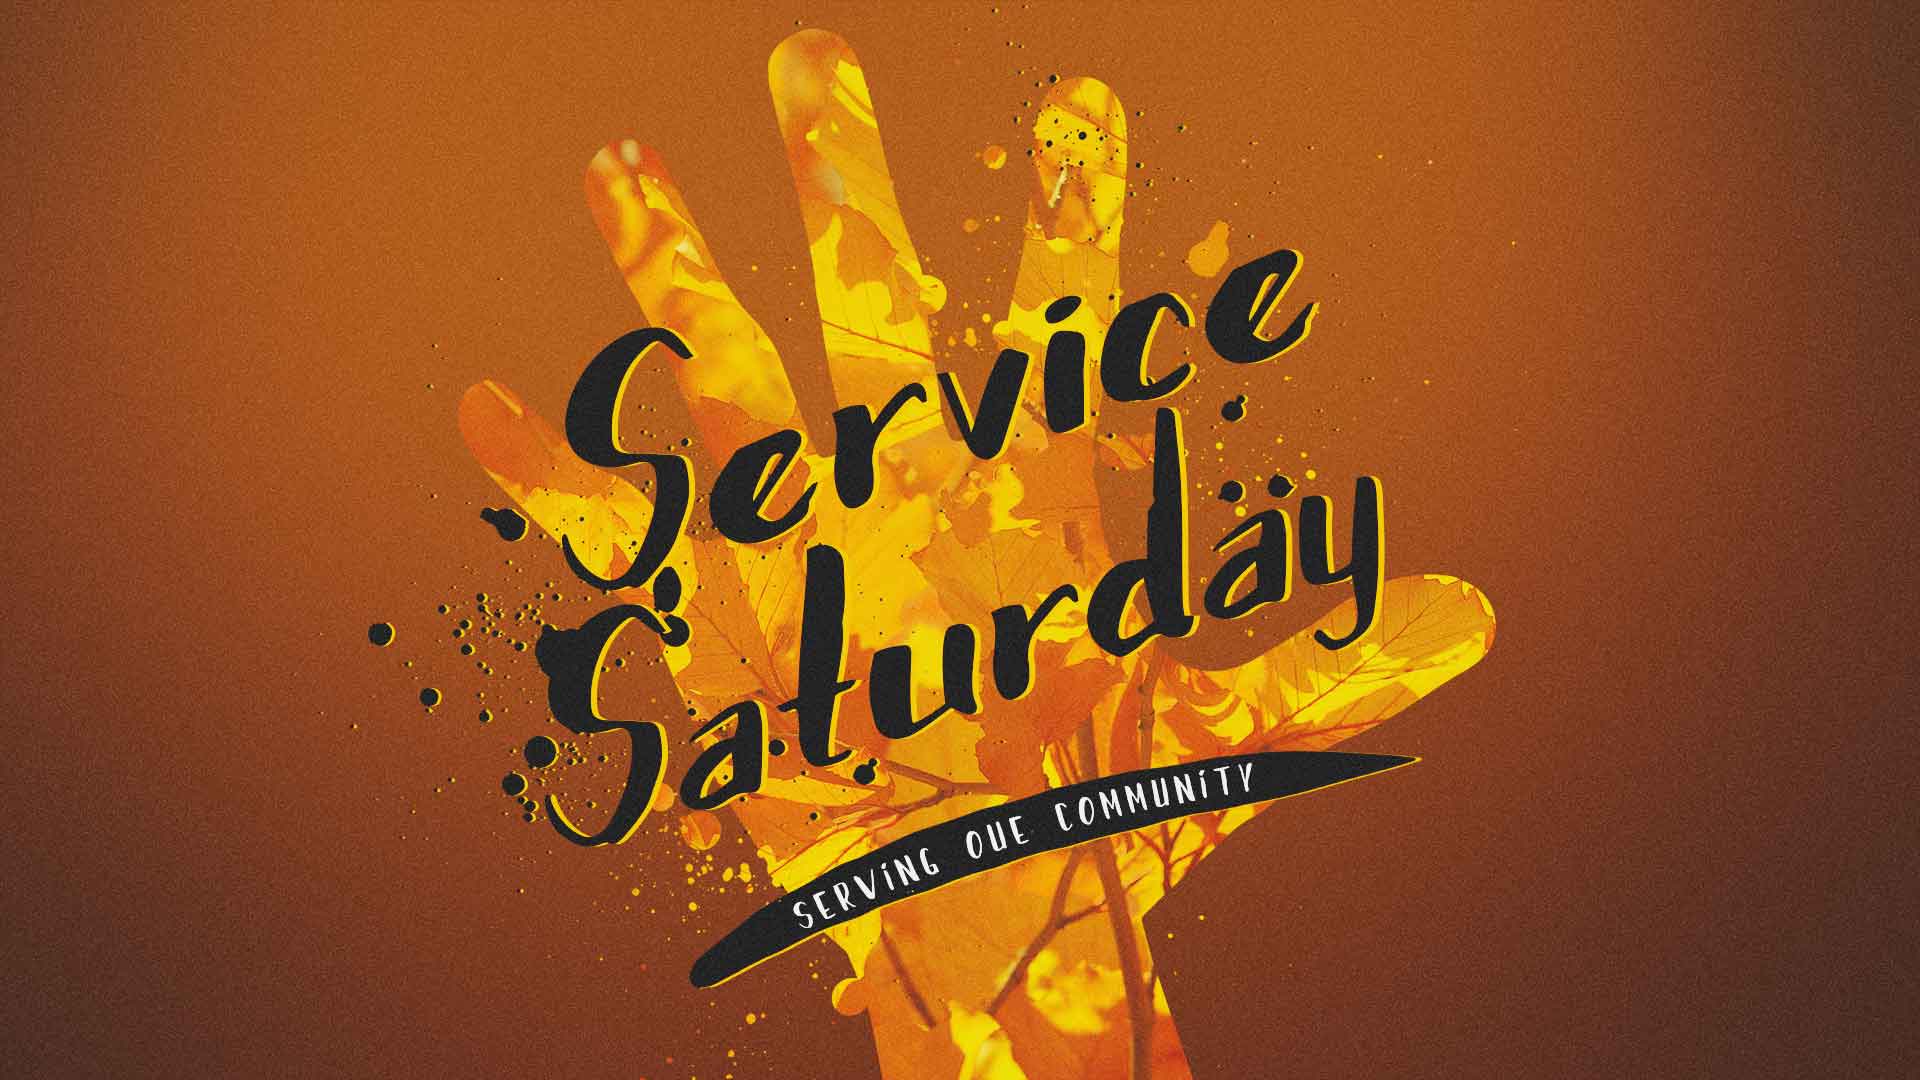 Service Saturday